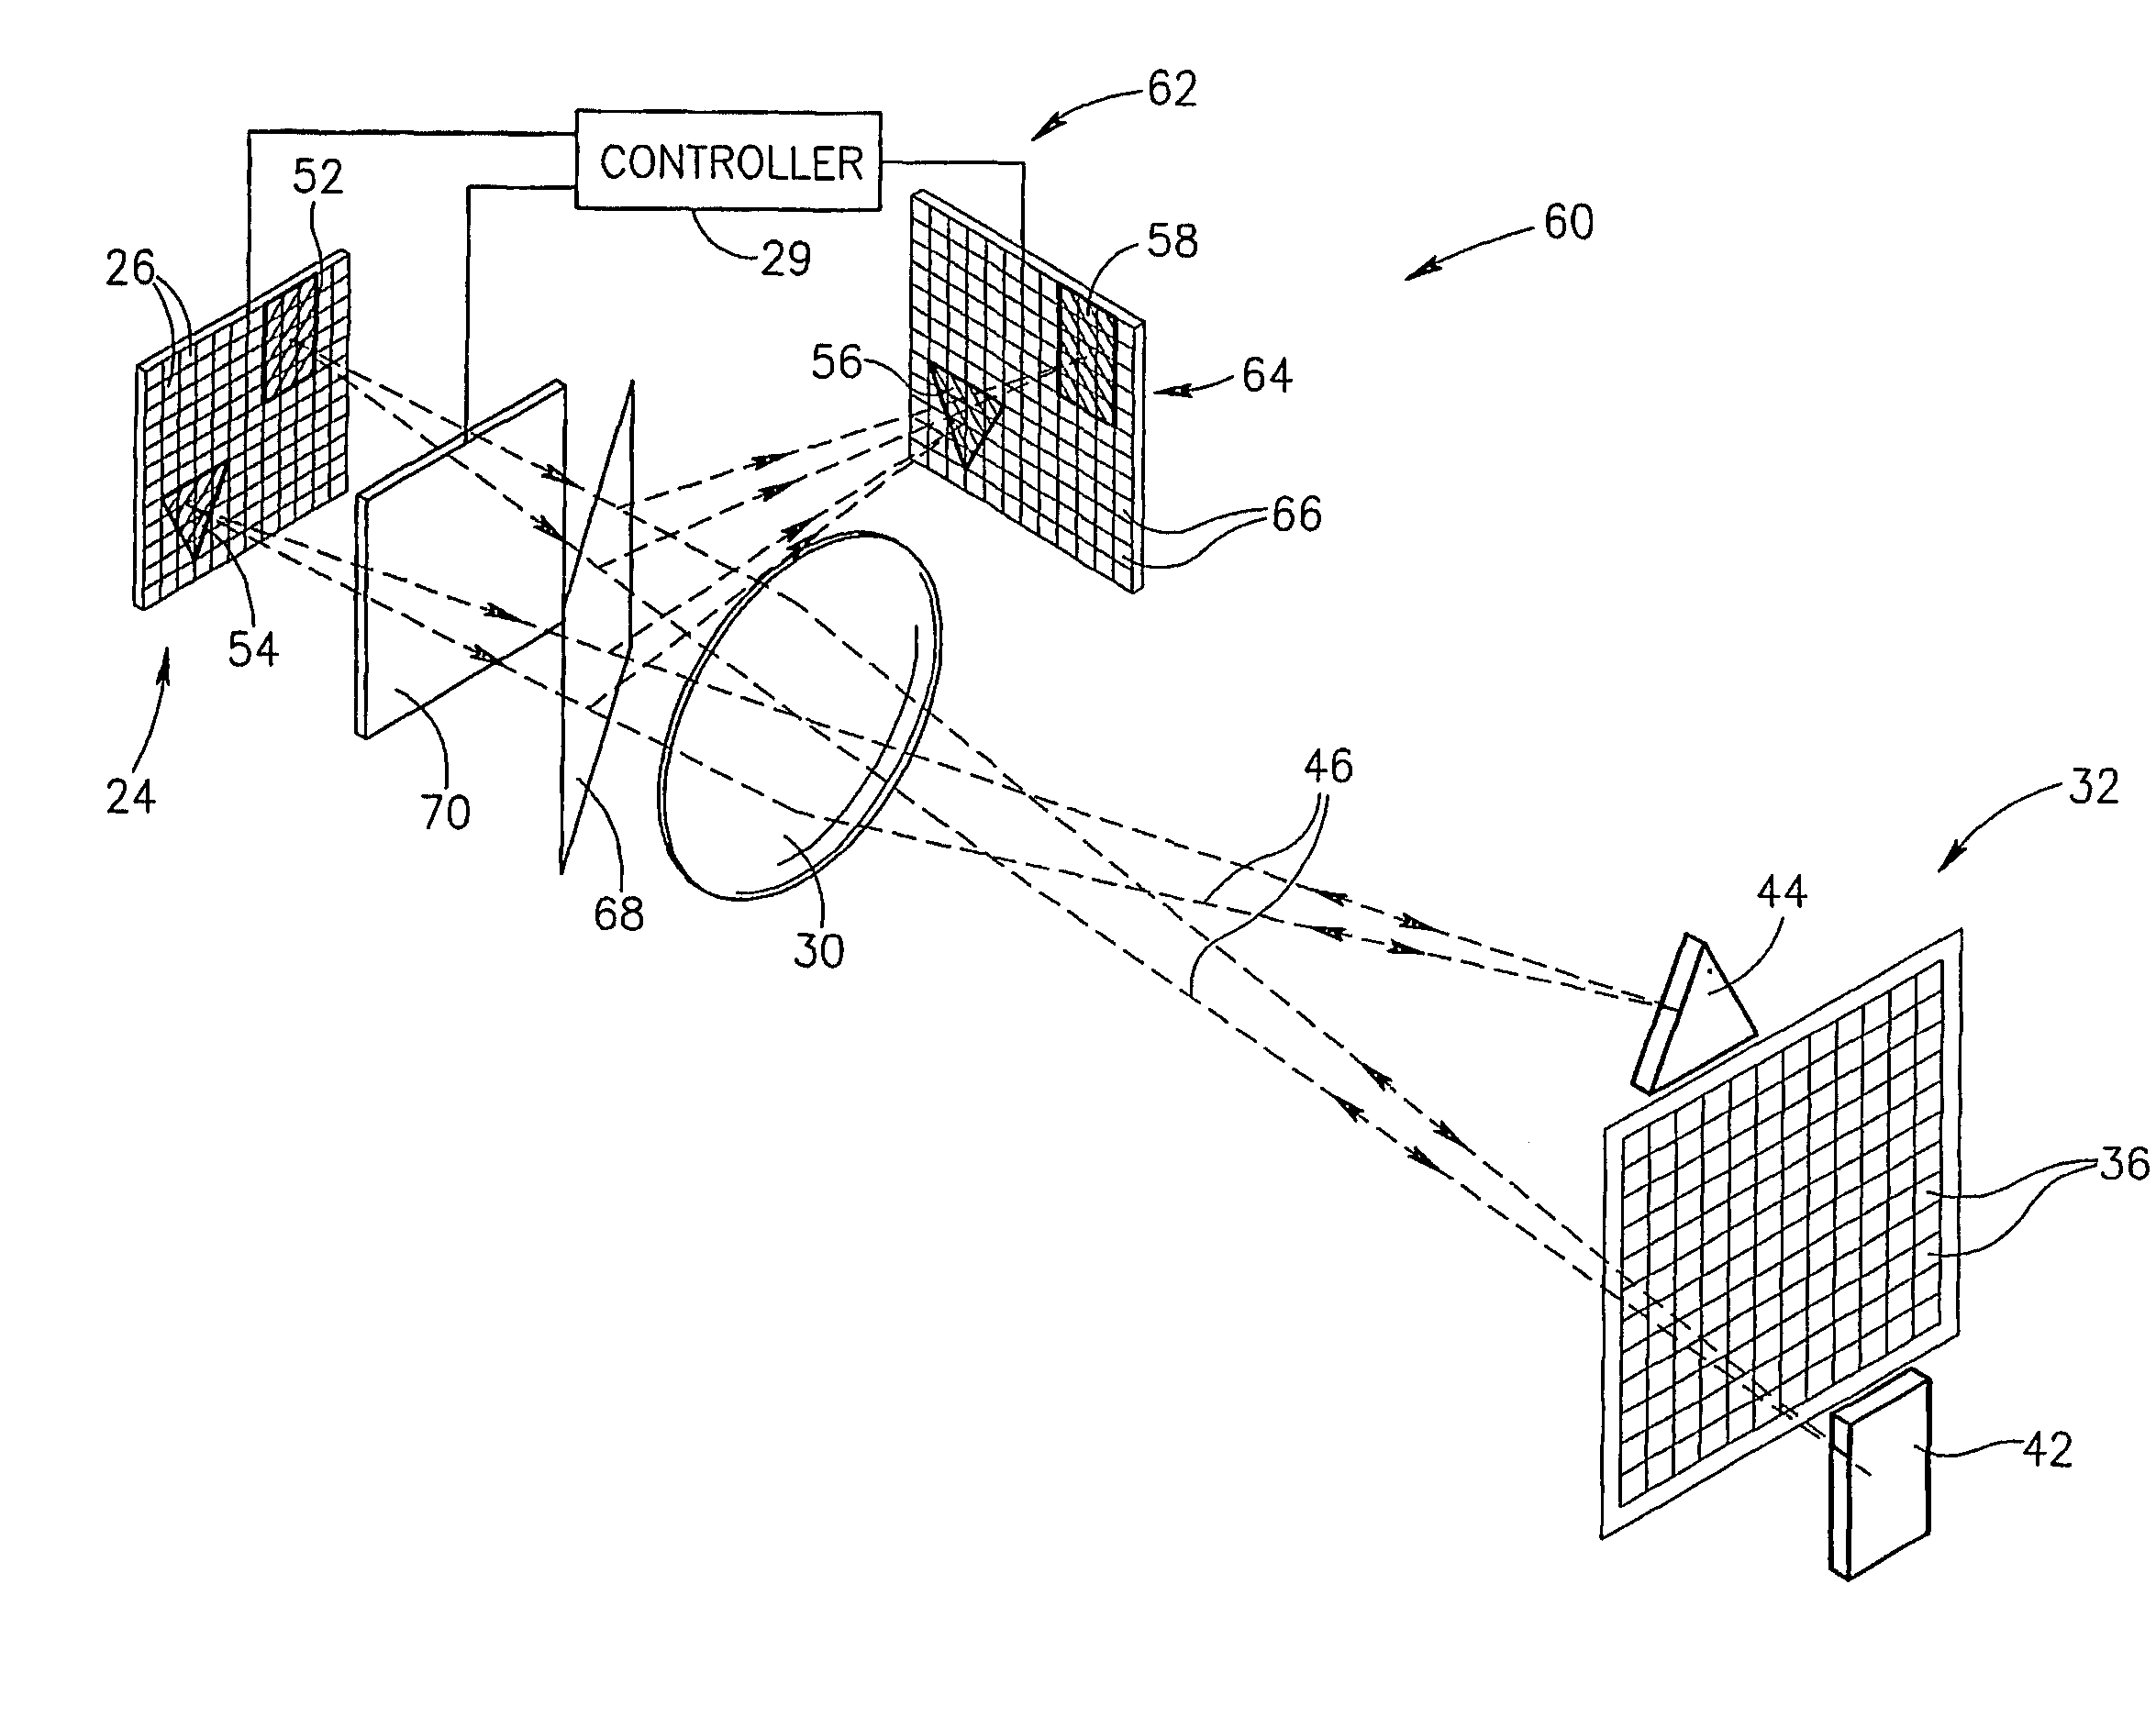 Method and apparatus for providing adaptive illumination